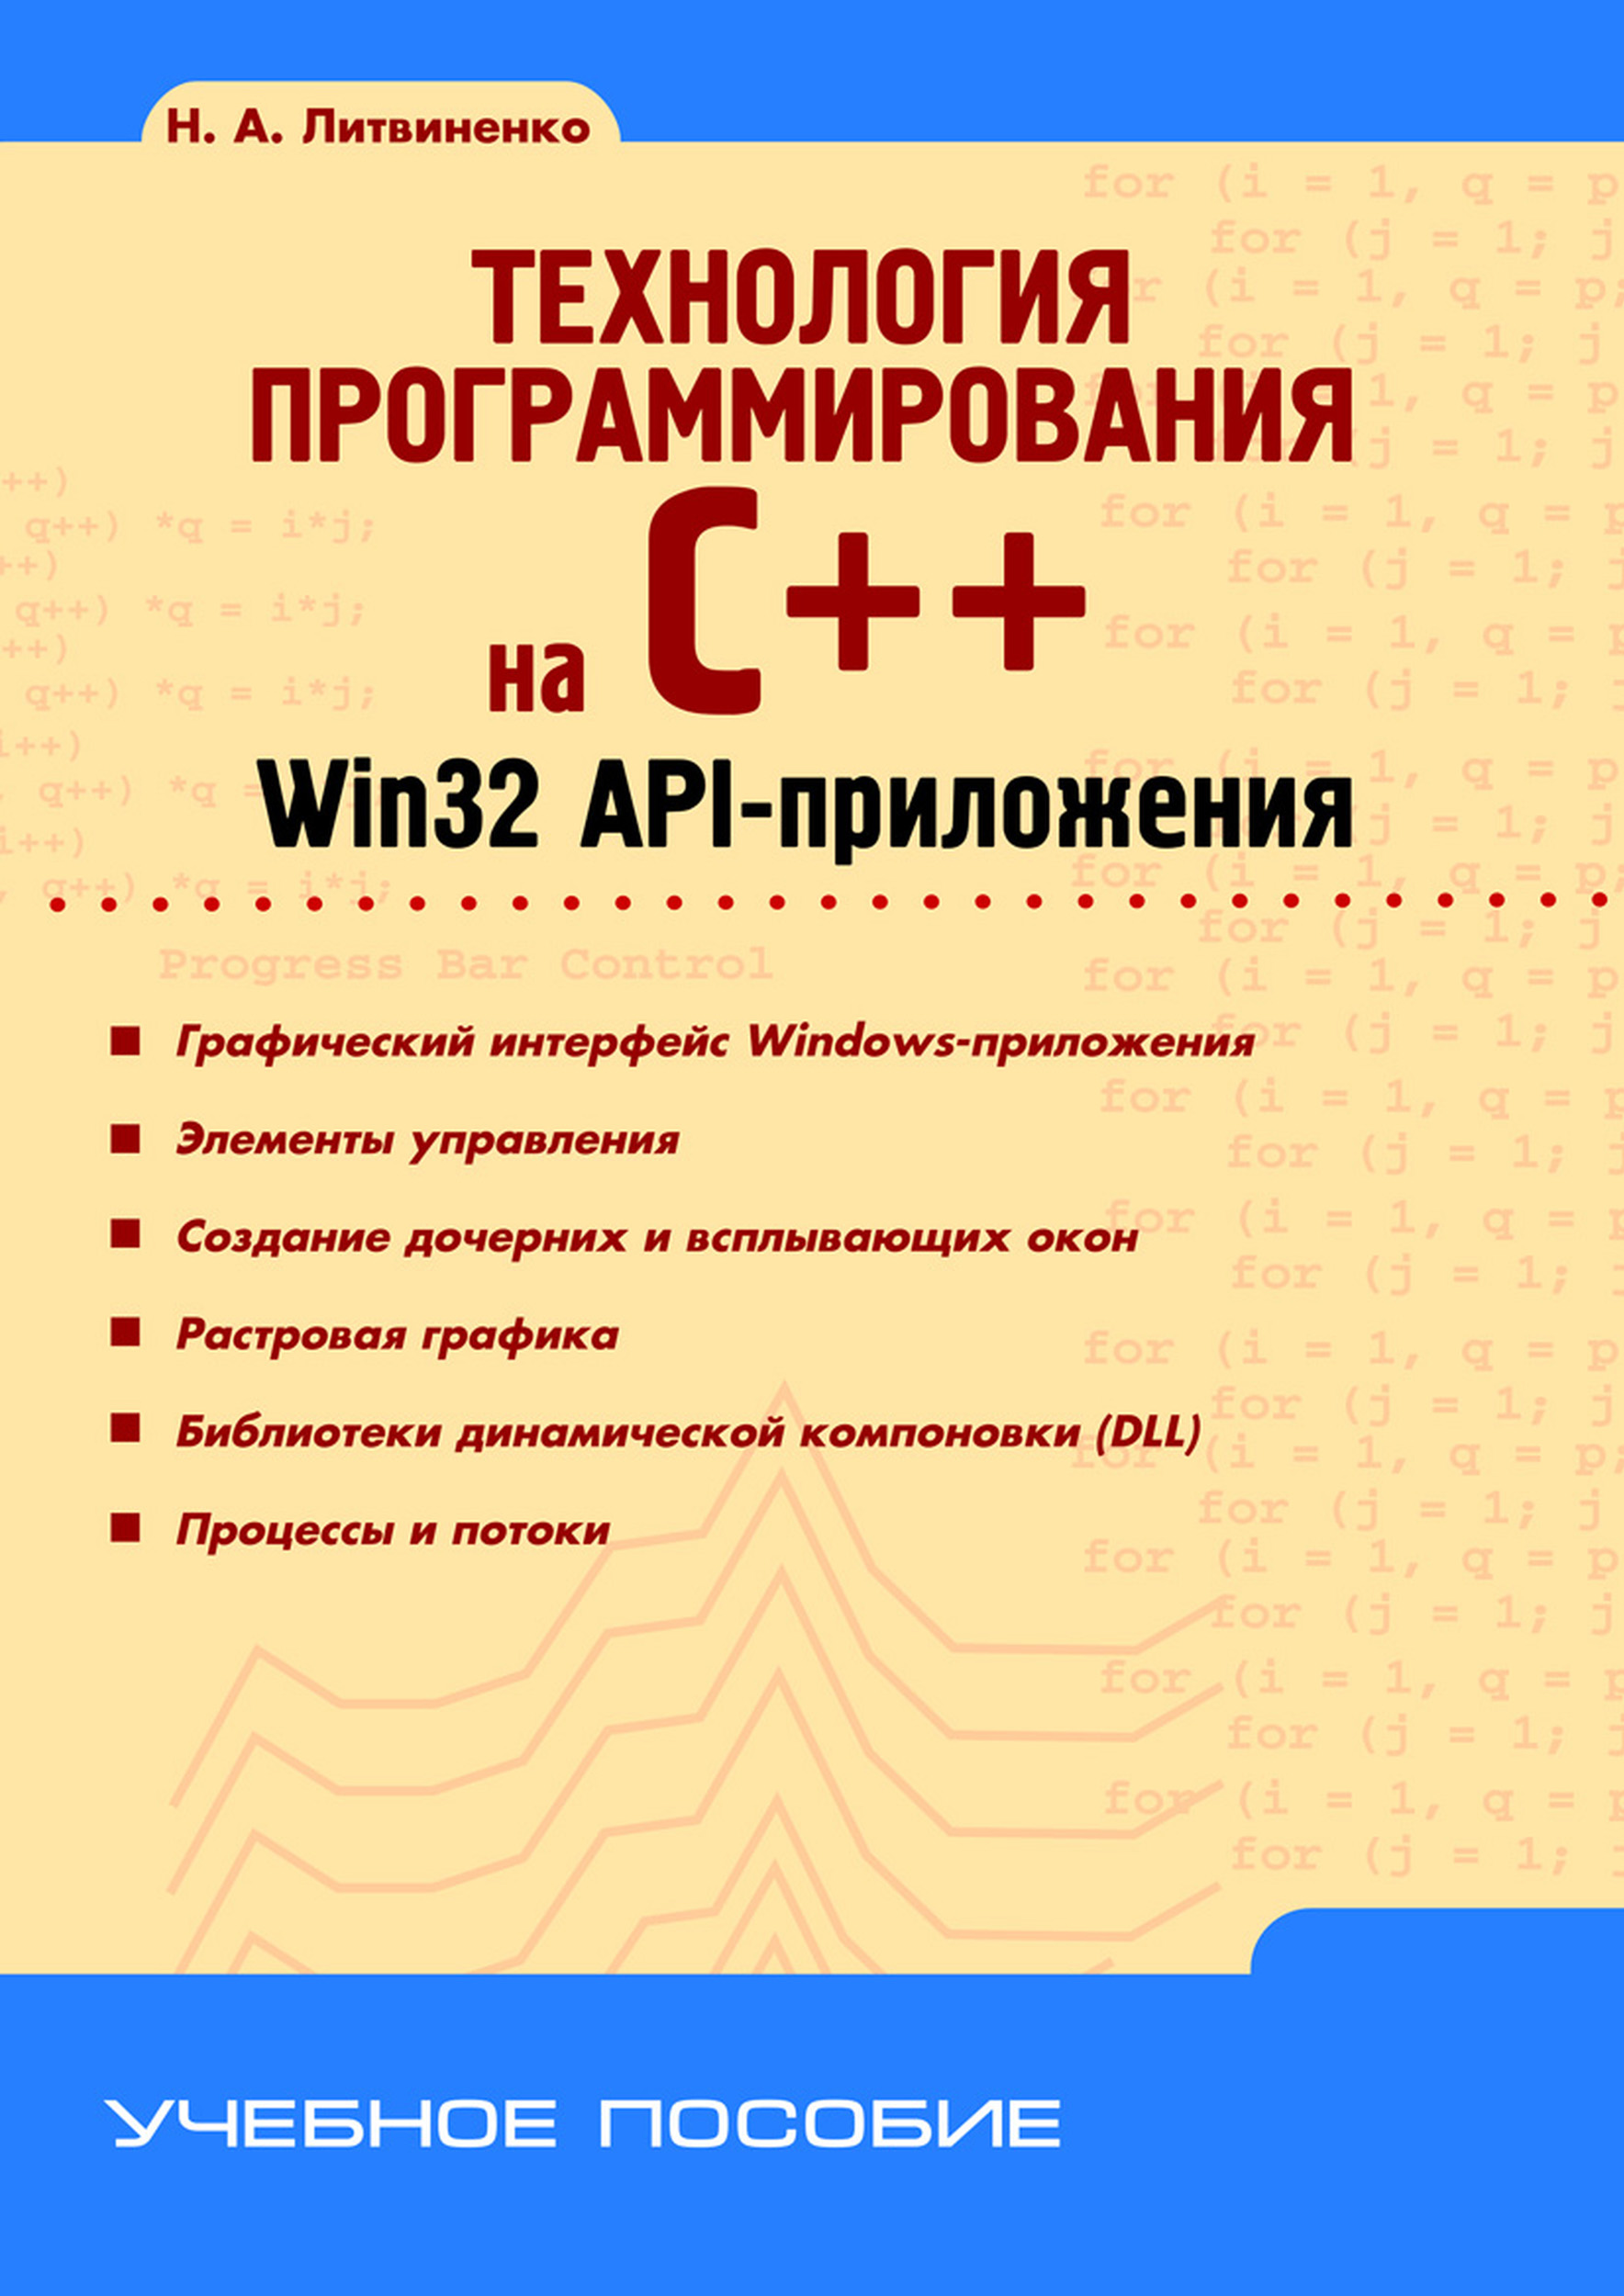 Книга Учебное пособие (BHV) Технология программирования на C++. Win32 API-приложения созданная Н. А. Литвиненко может относится к жанру программирование. Стоимость электронной книги Технология программирования на C++. Win32 API-приложения с идентификатором 7006531 составляет 215.00 руб.